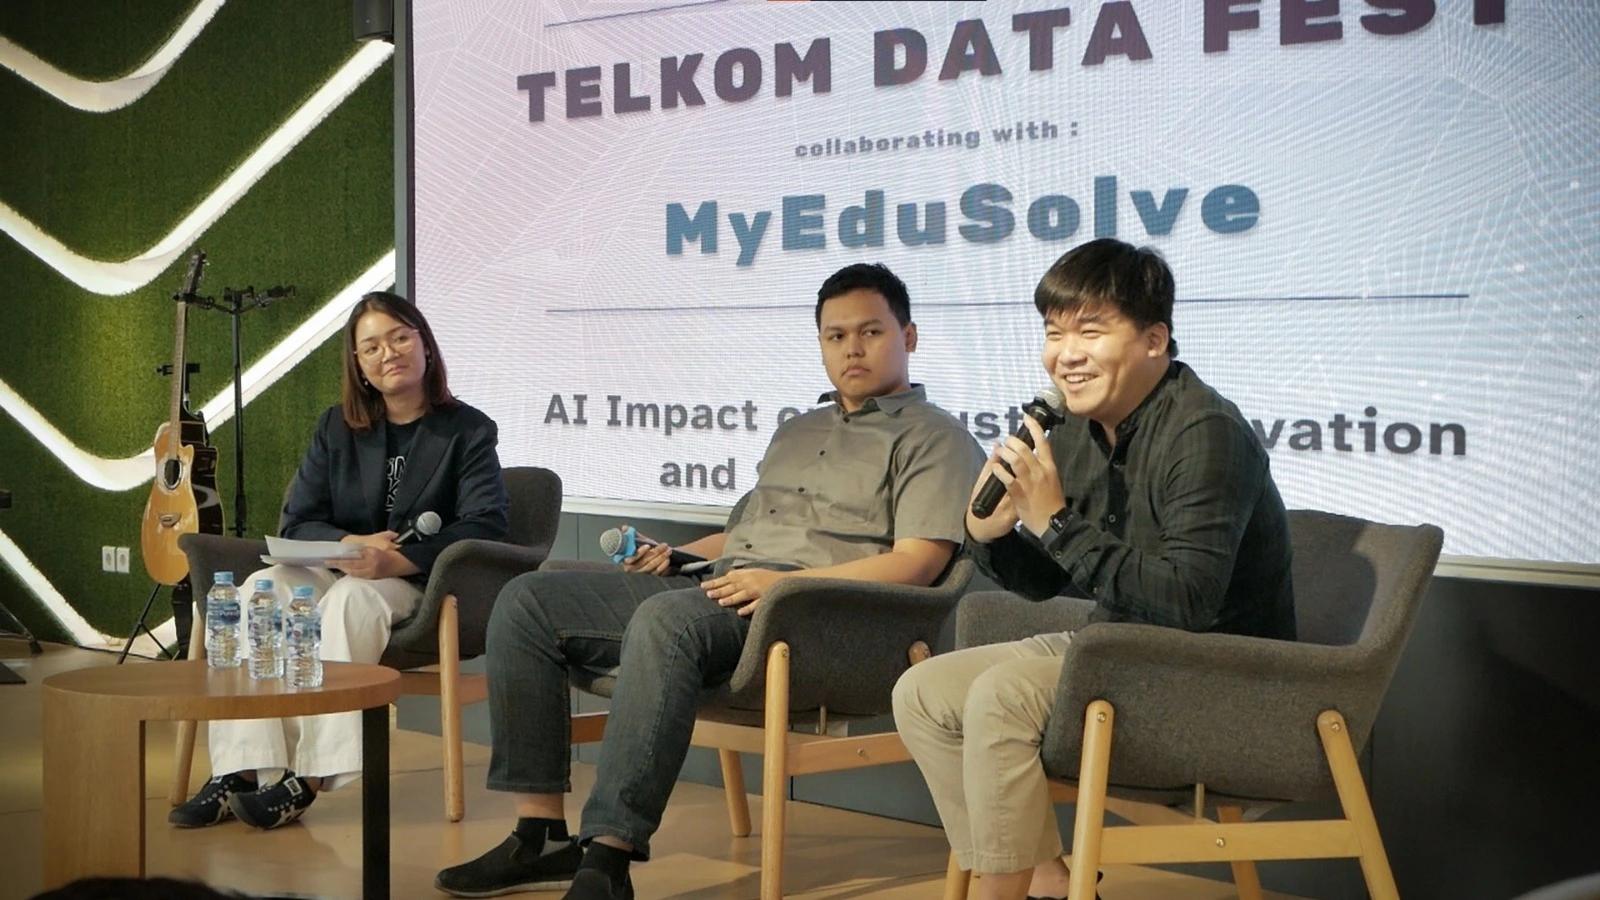 Telkom Data Fest X MyEduSolve: Seminar Dampak AI pada Inovasi Industri dan Pengembangan Keterampilan cover